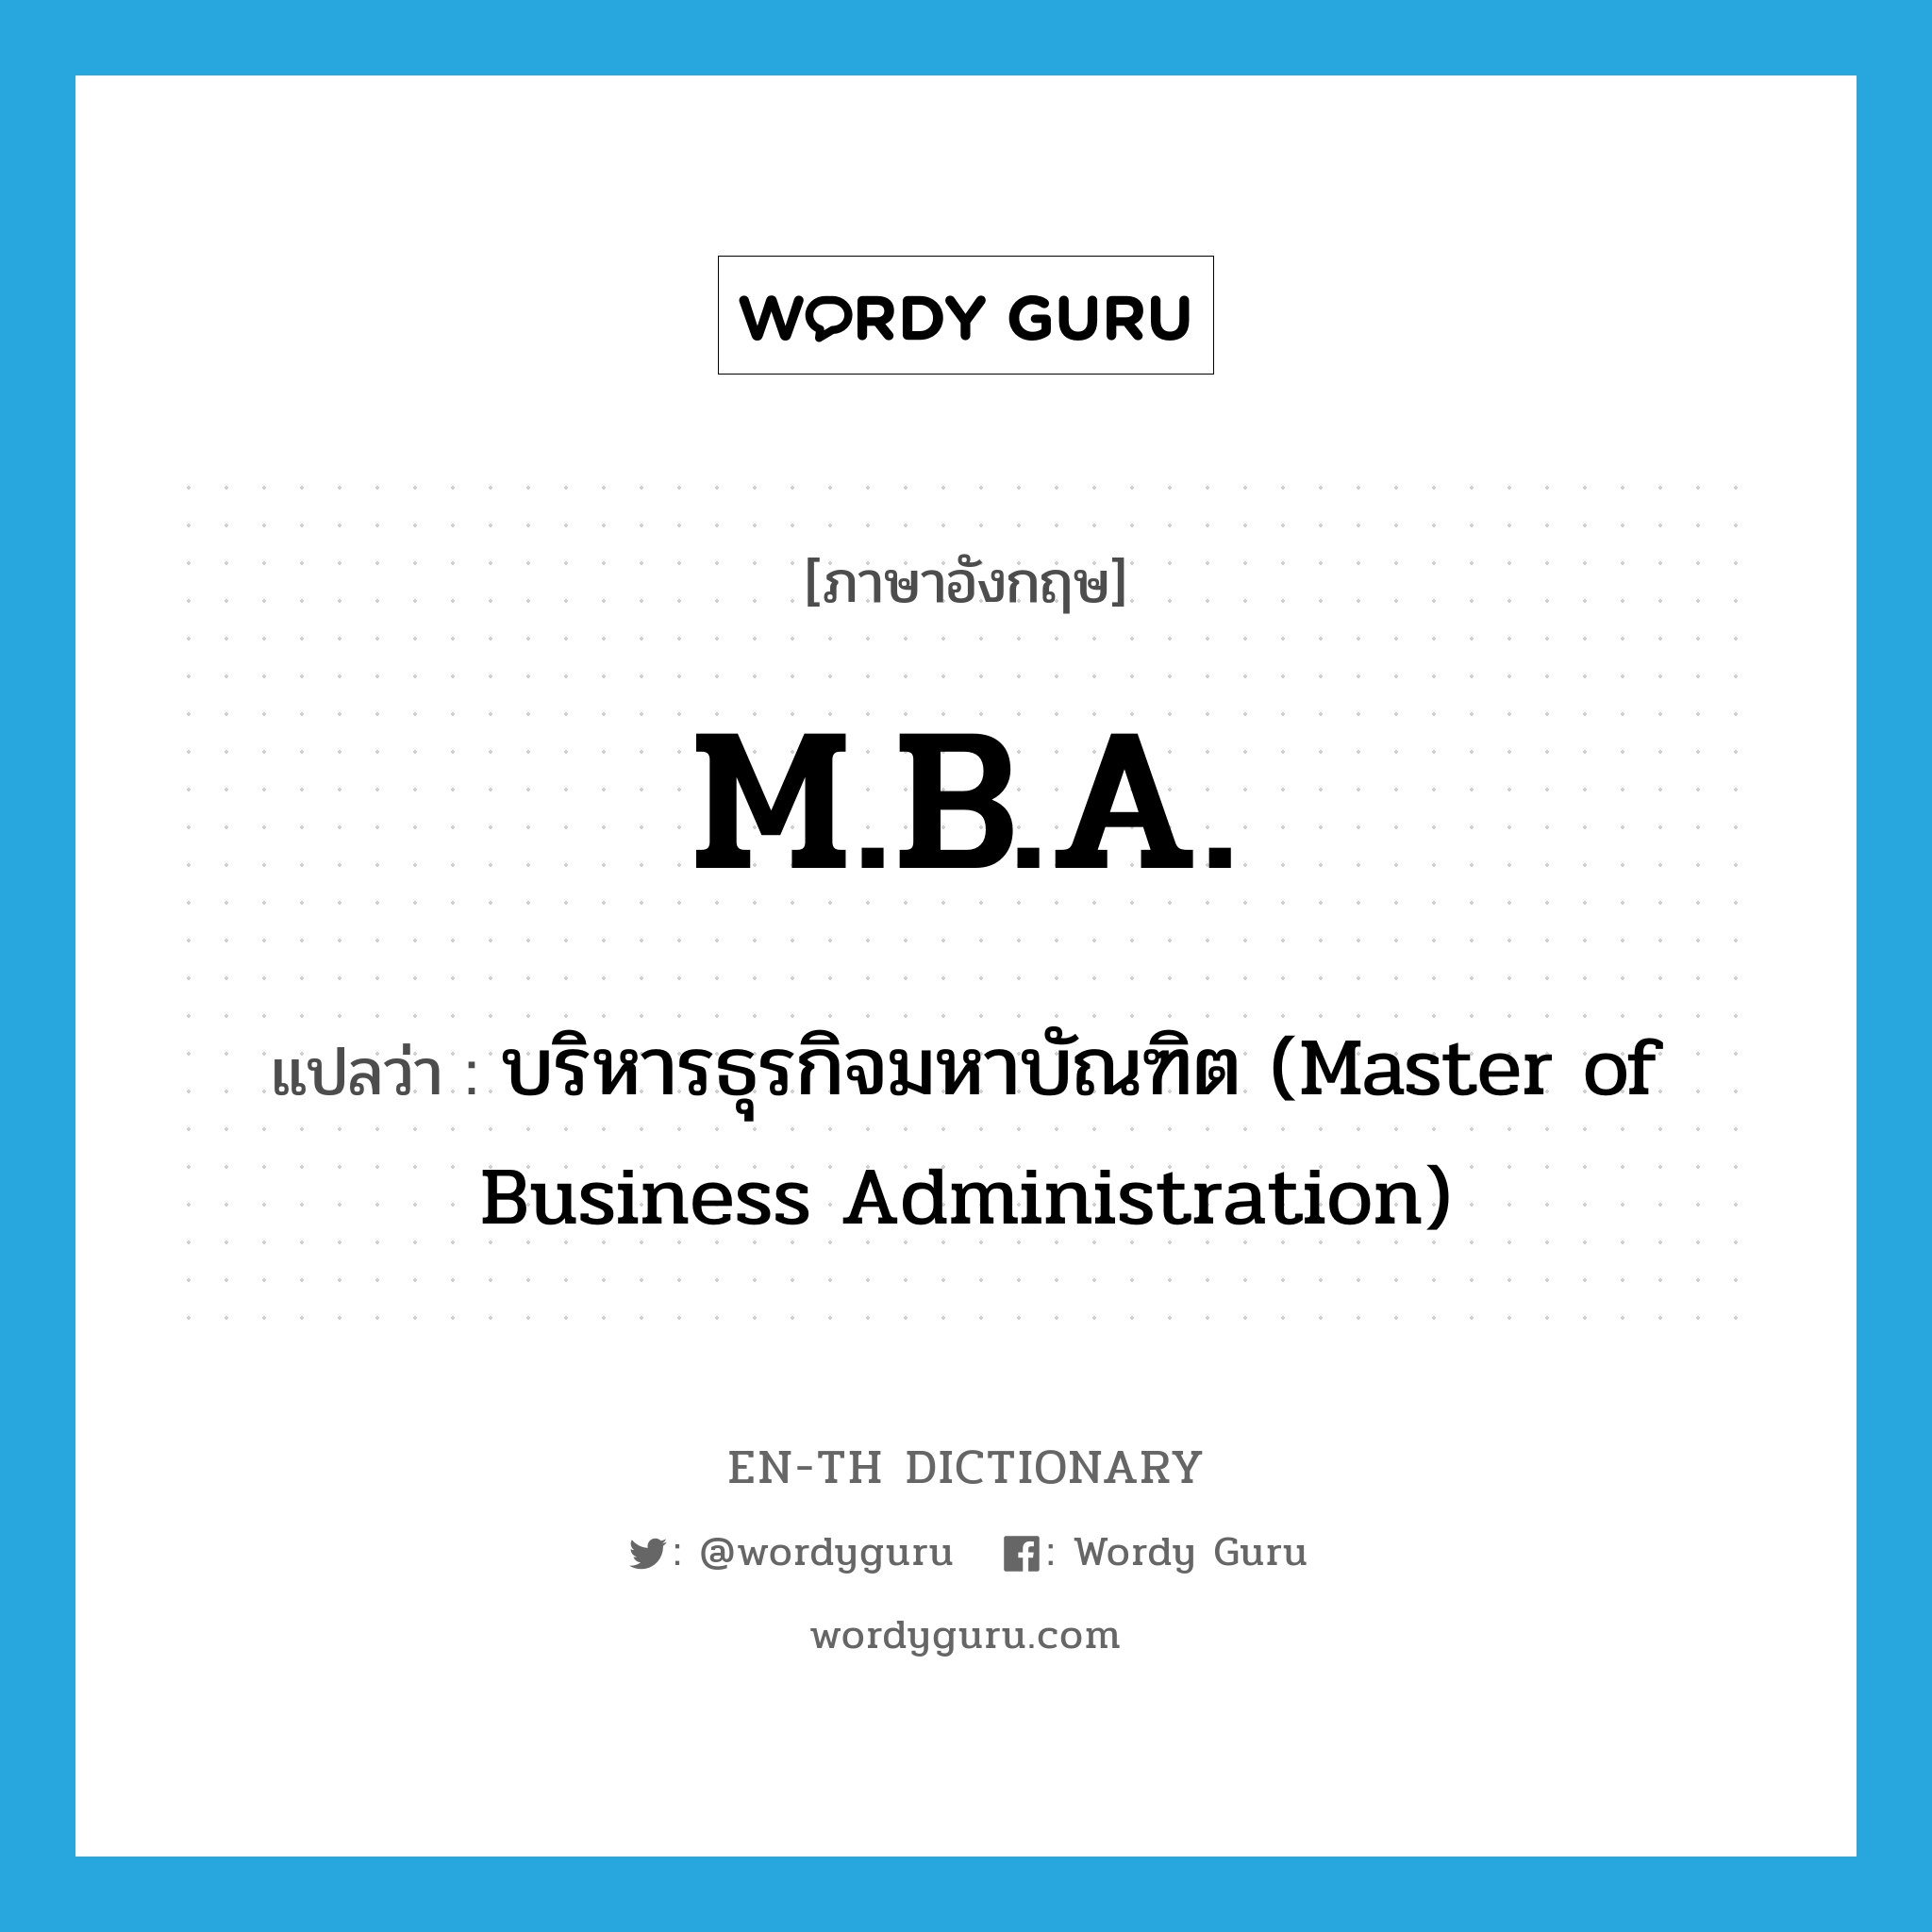 บริหารธุรกิจมหาบัณฑิต (Master of Business Administration) ภาษาอังกฤษ?, คำศัพท์ภาษาอังกฤษ บริหารธุรกิจมหาบัณฑิต (Master of Business Administration) แปลว่า M.B.A. ประเภท ABBR หมวด ABBR